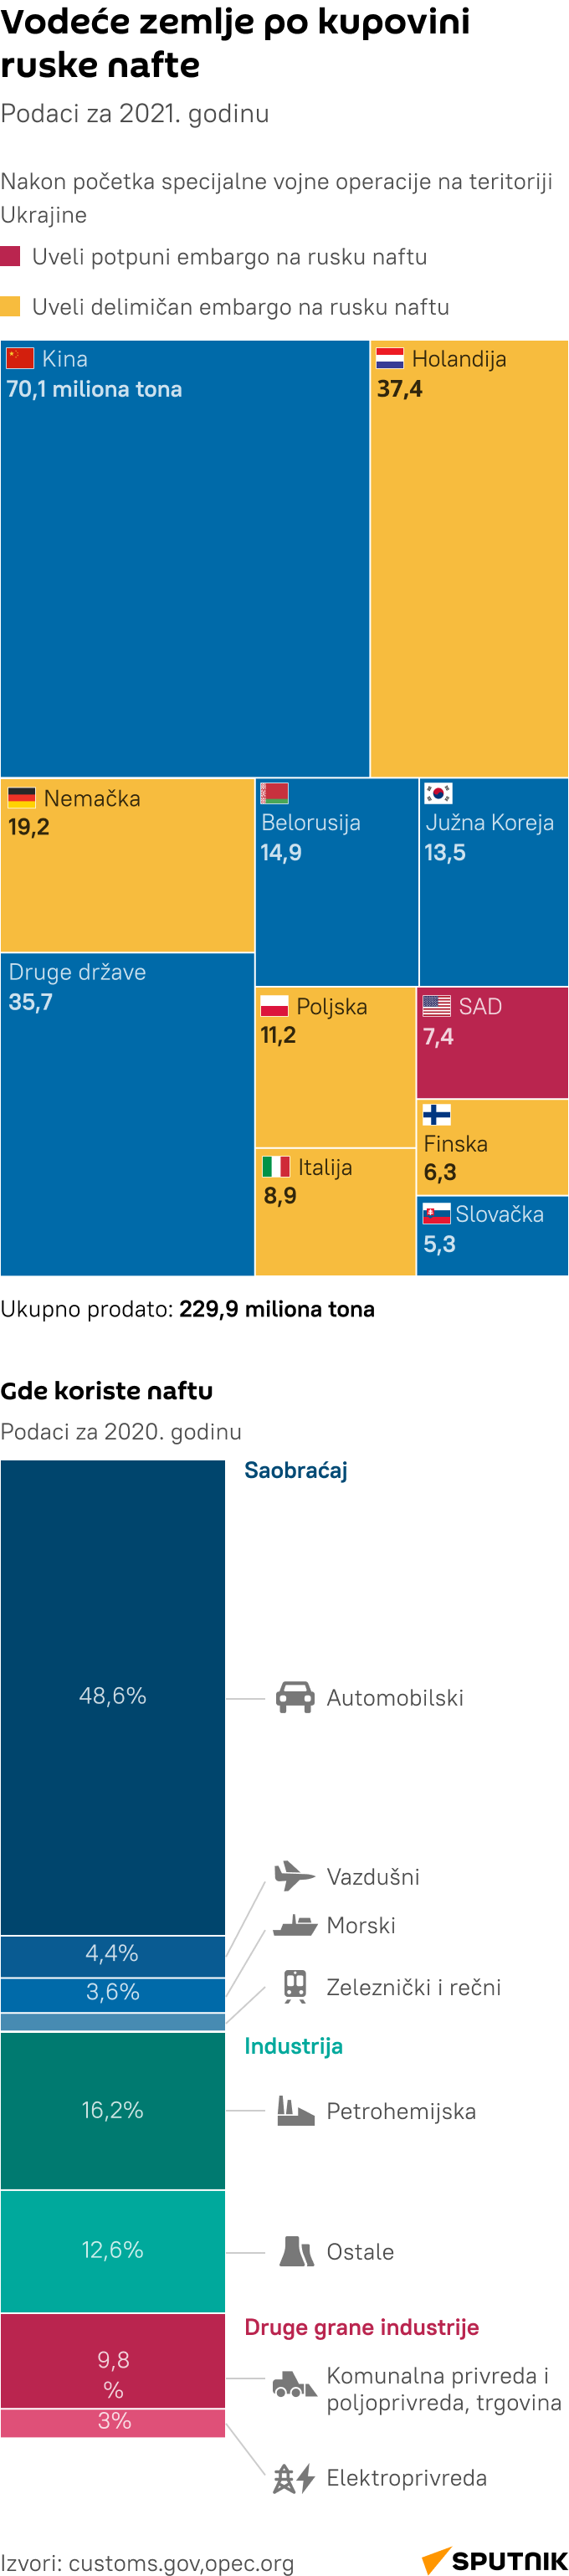 Vodeće zemlje po kupovini ruske nafte - Infografika  LATINICA mob - Sputnik Srbija